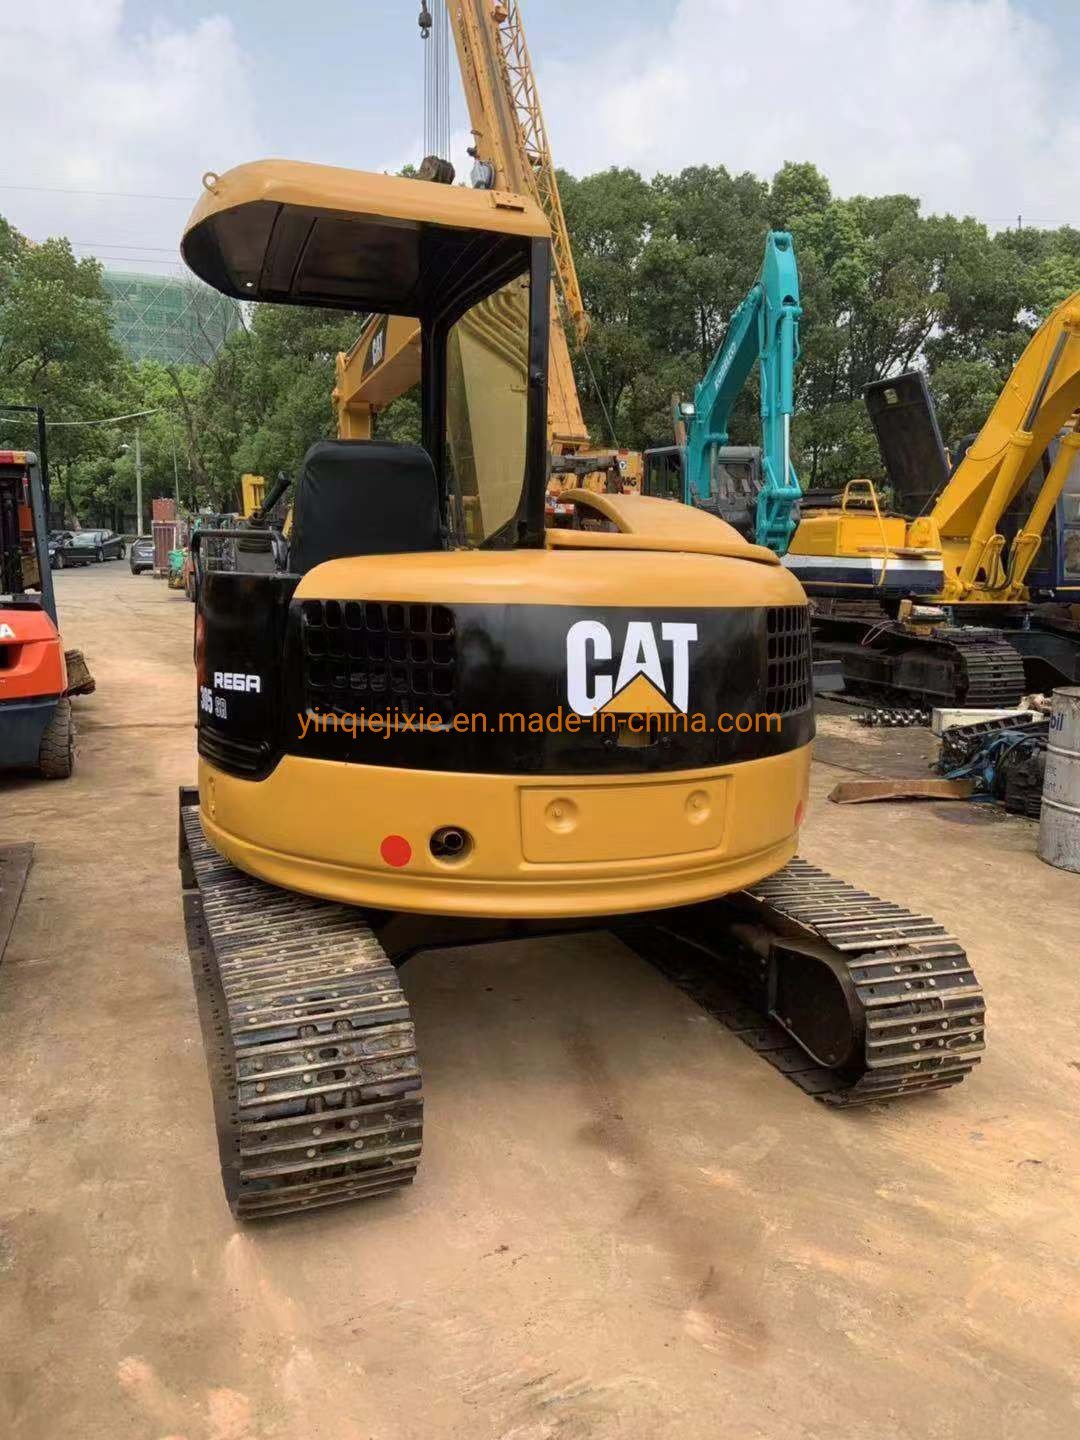 Used Cat Mini Excavator Caterpillar 305cr Excavator for Sale